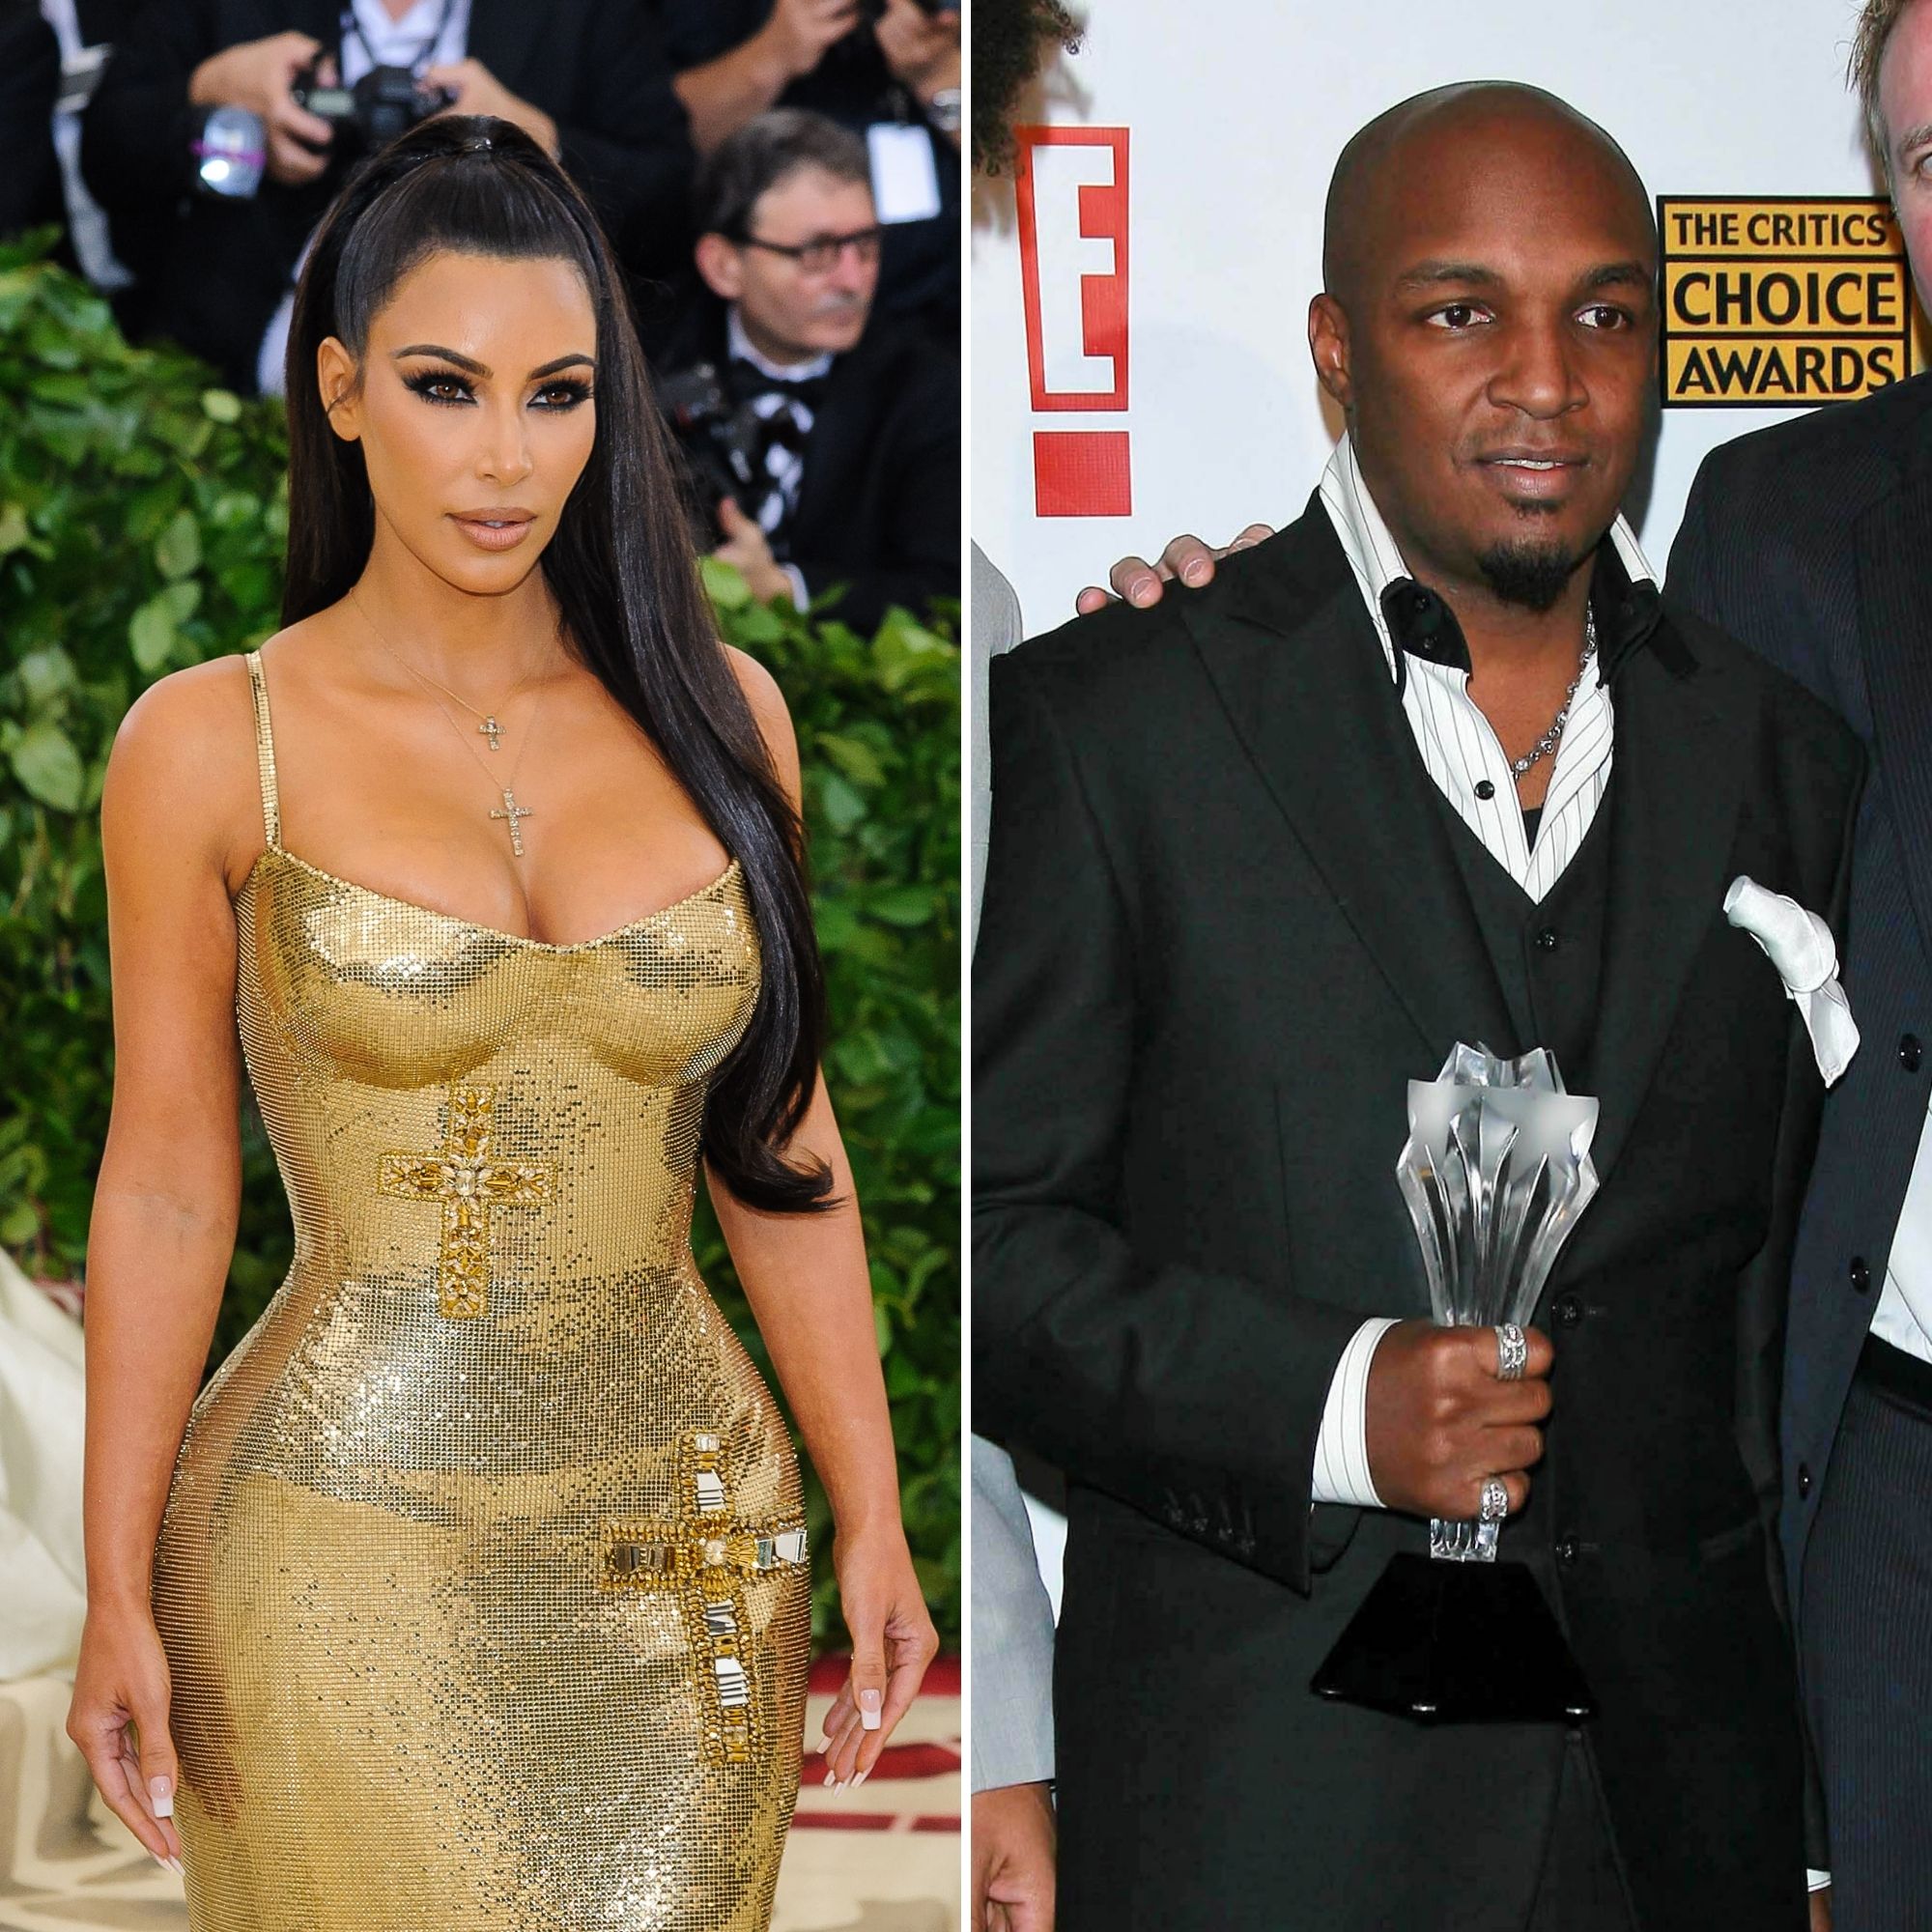 Kim Kardashian's ex-husband brands past ecstasy comments 'unfair